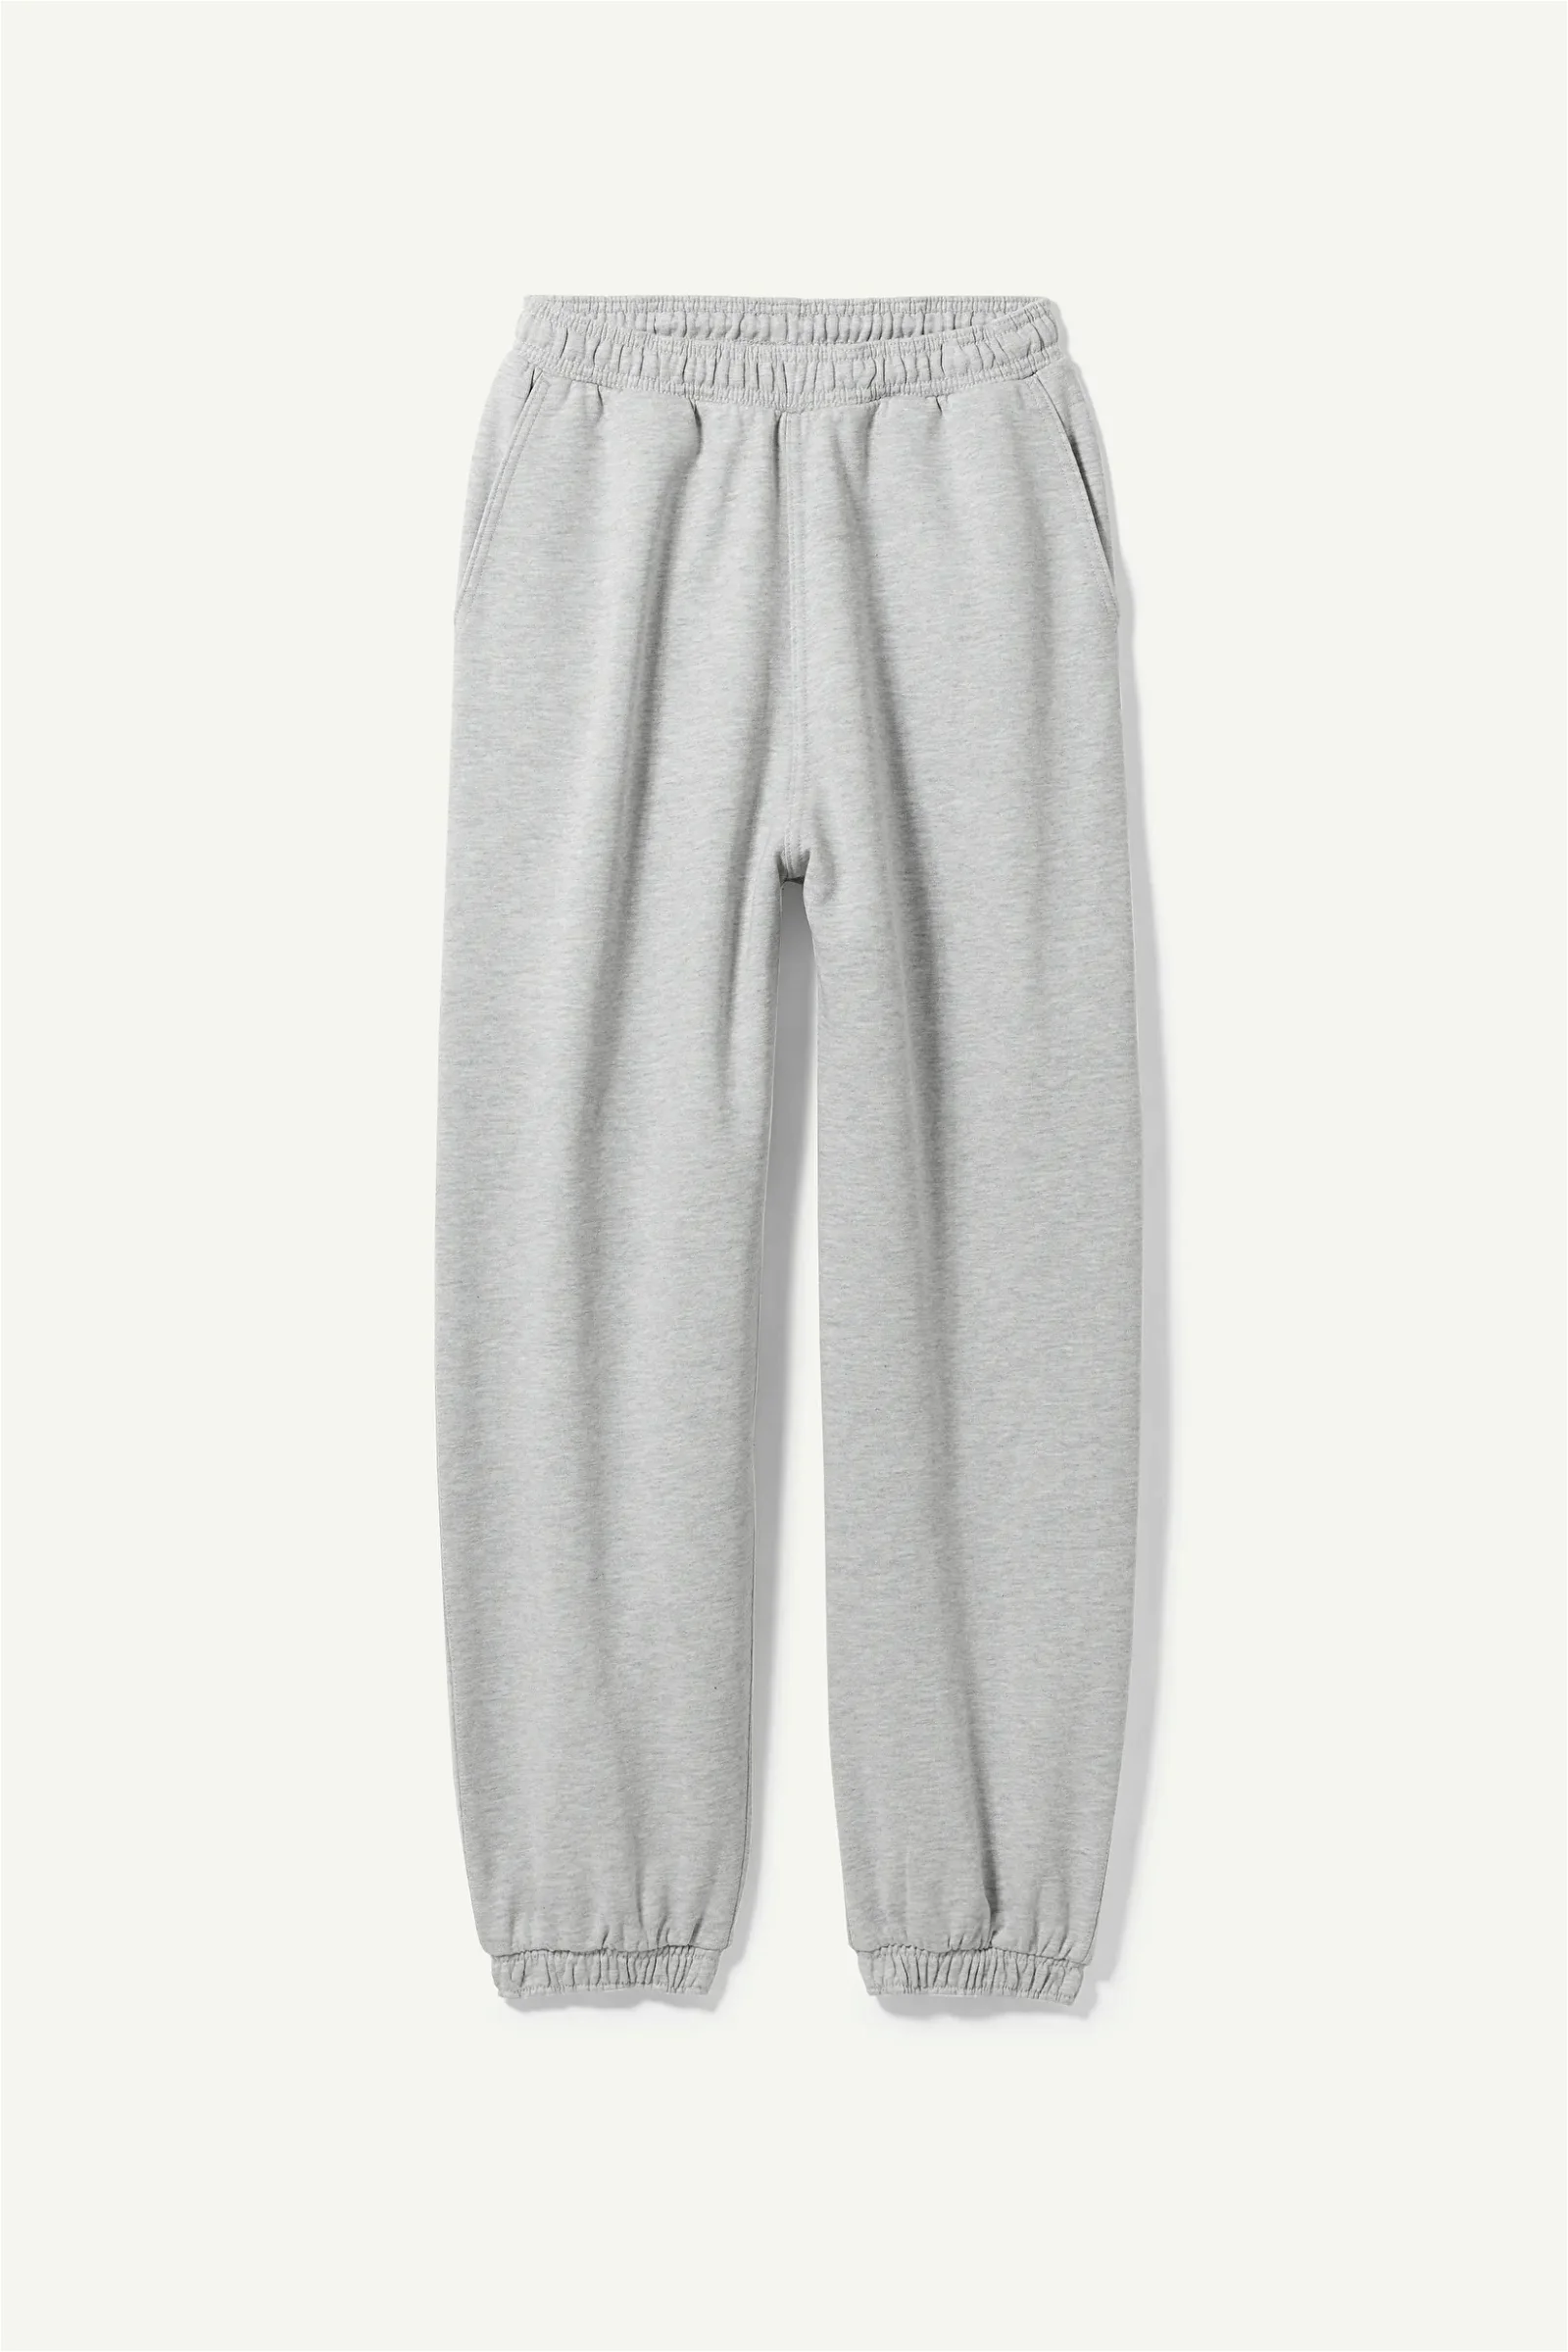 WEEKDAY Ethan Oversized Sweatpants in Grey | Endource